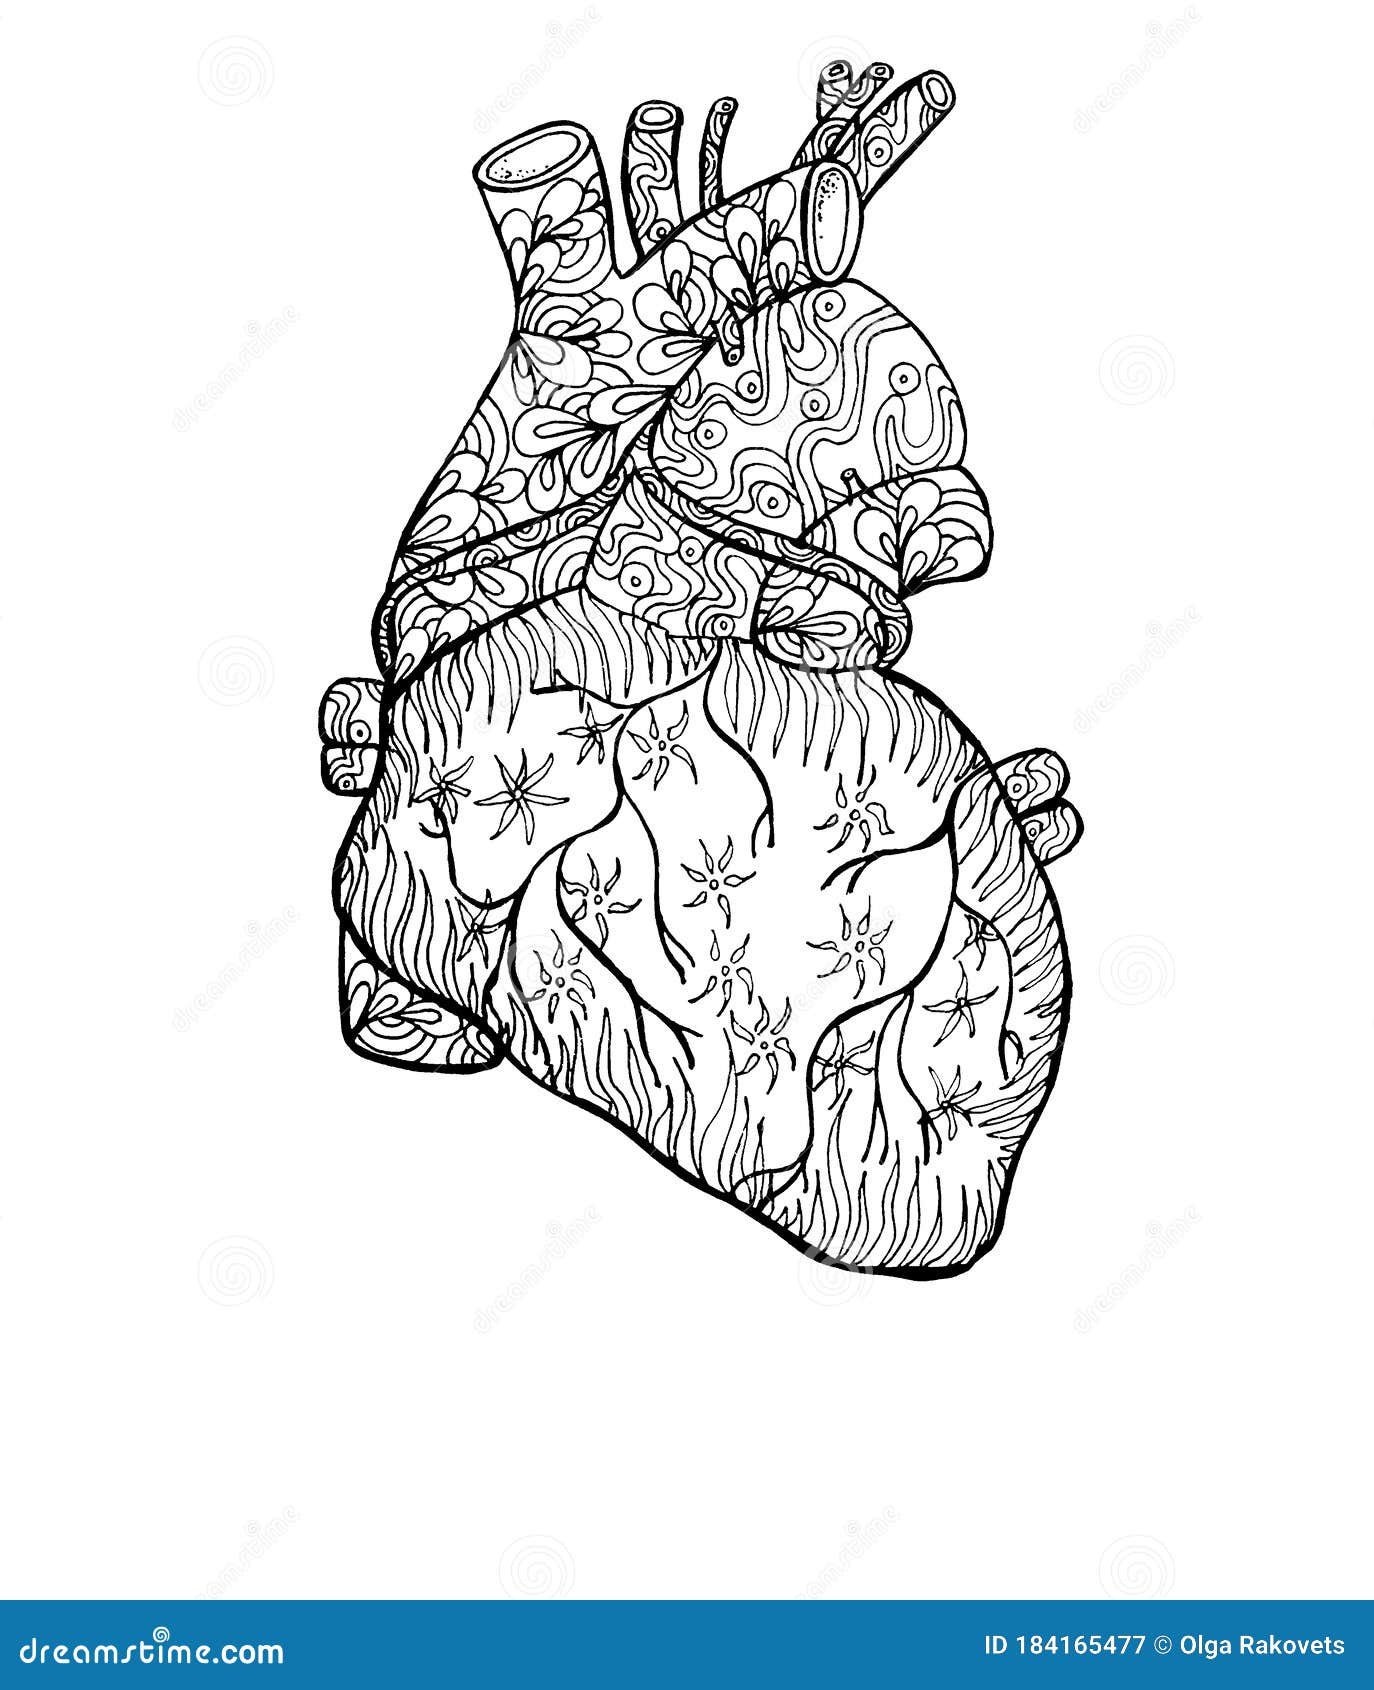 Delinear El Corazón Humano Con Patrones De Fantasía Anatomía Ilustración  Para El Diseño Y La Creatividad Colorear Antiestrés Para Stock de  ilustración - Ilustración de adulto, vendimia: 184165477